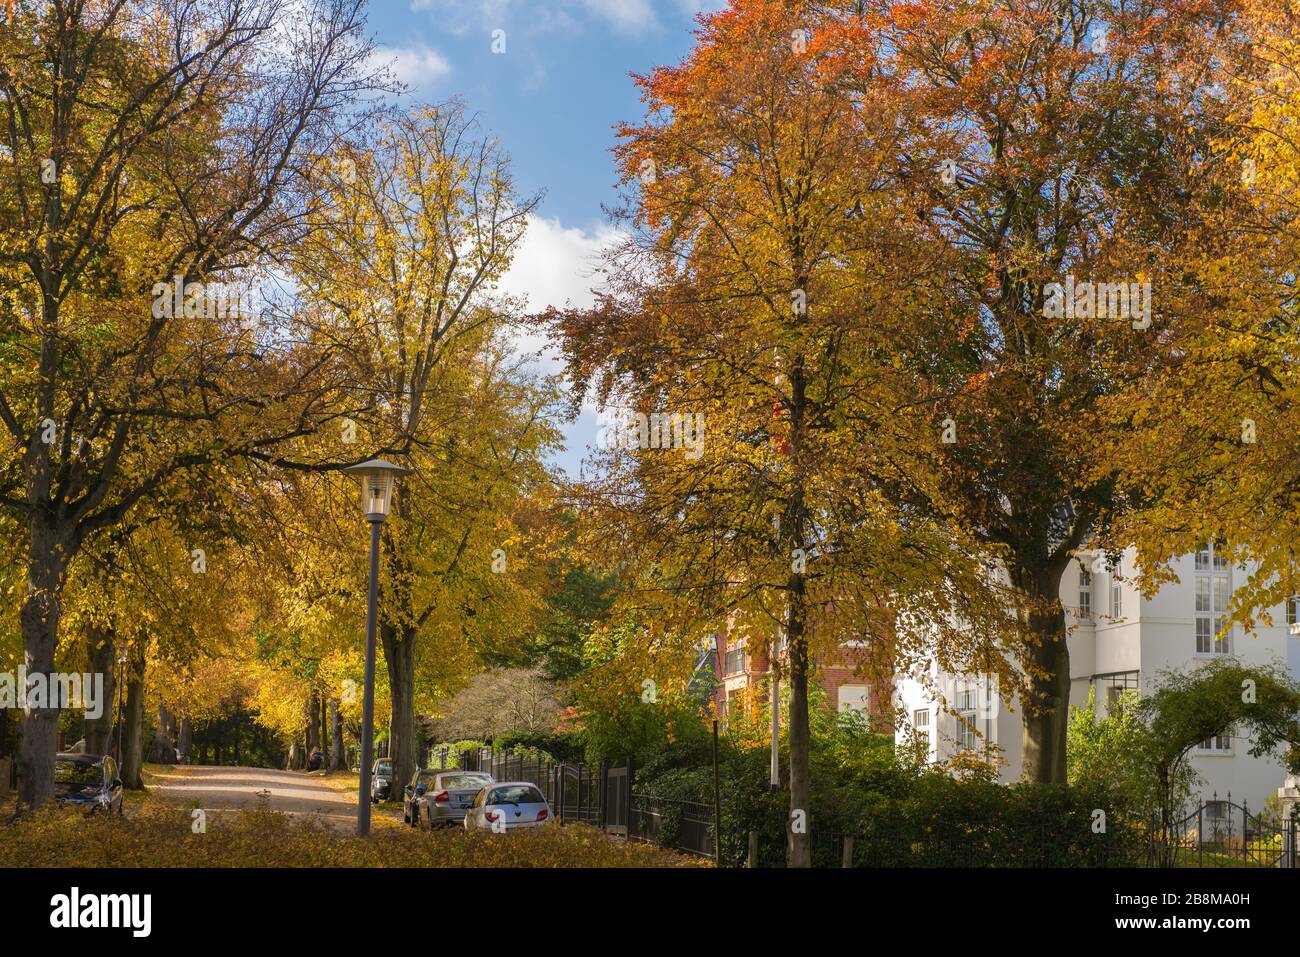 Feuillage d'automne dans le parc Forstbaumschule, Kiel, capitale du Schleswig-Holstein, Allemagne du Nord, Europe centrale Banque D'Images